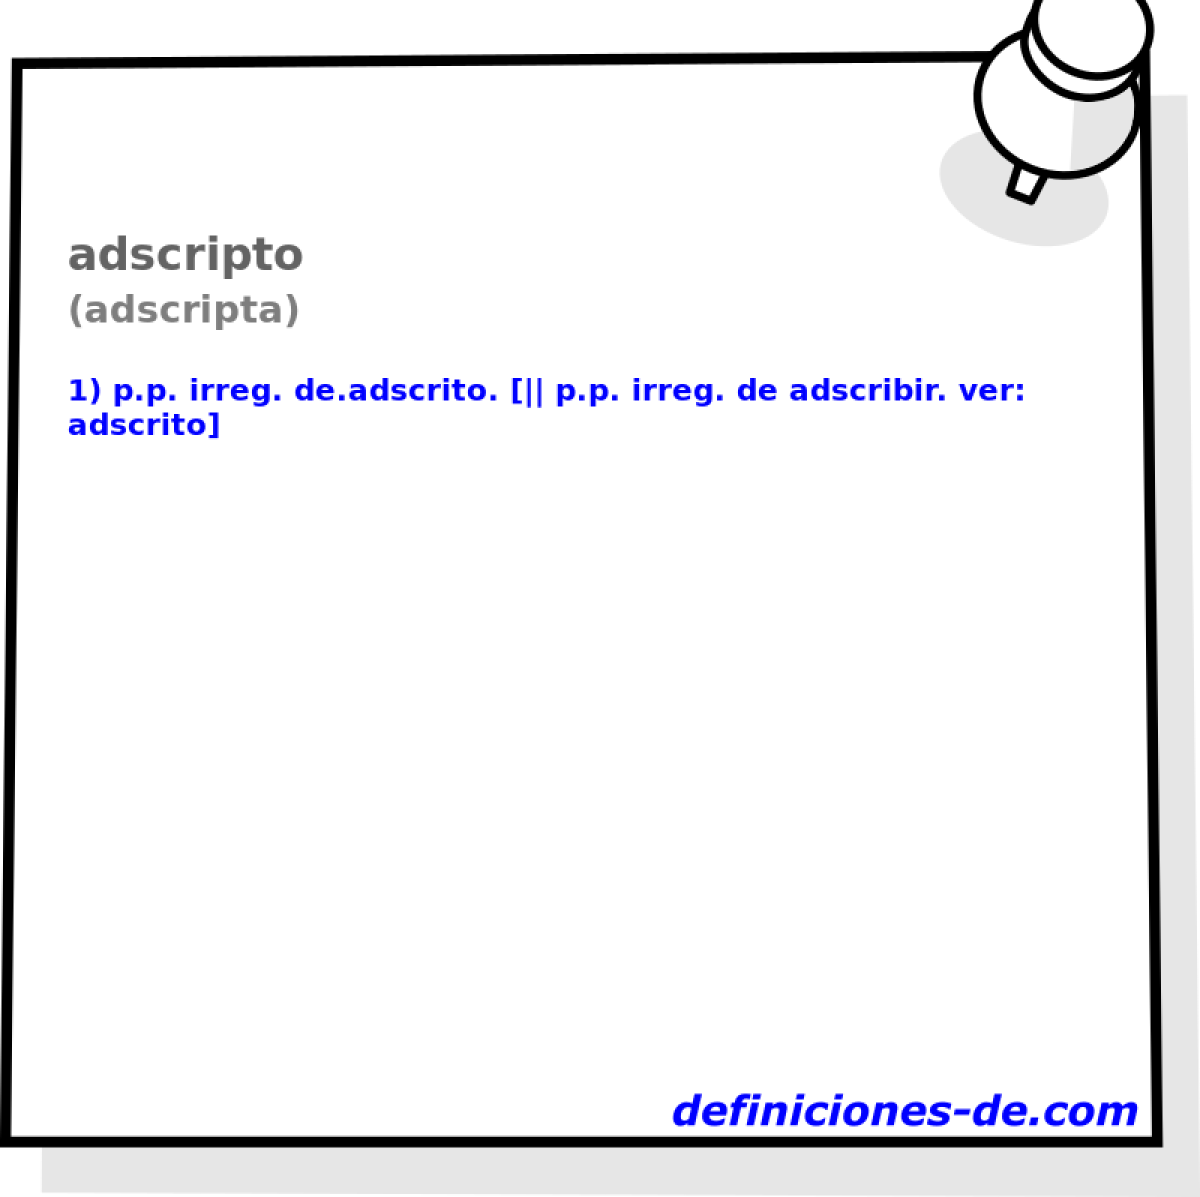 adscripto (adscripta)